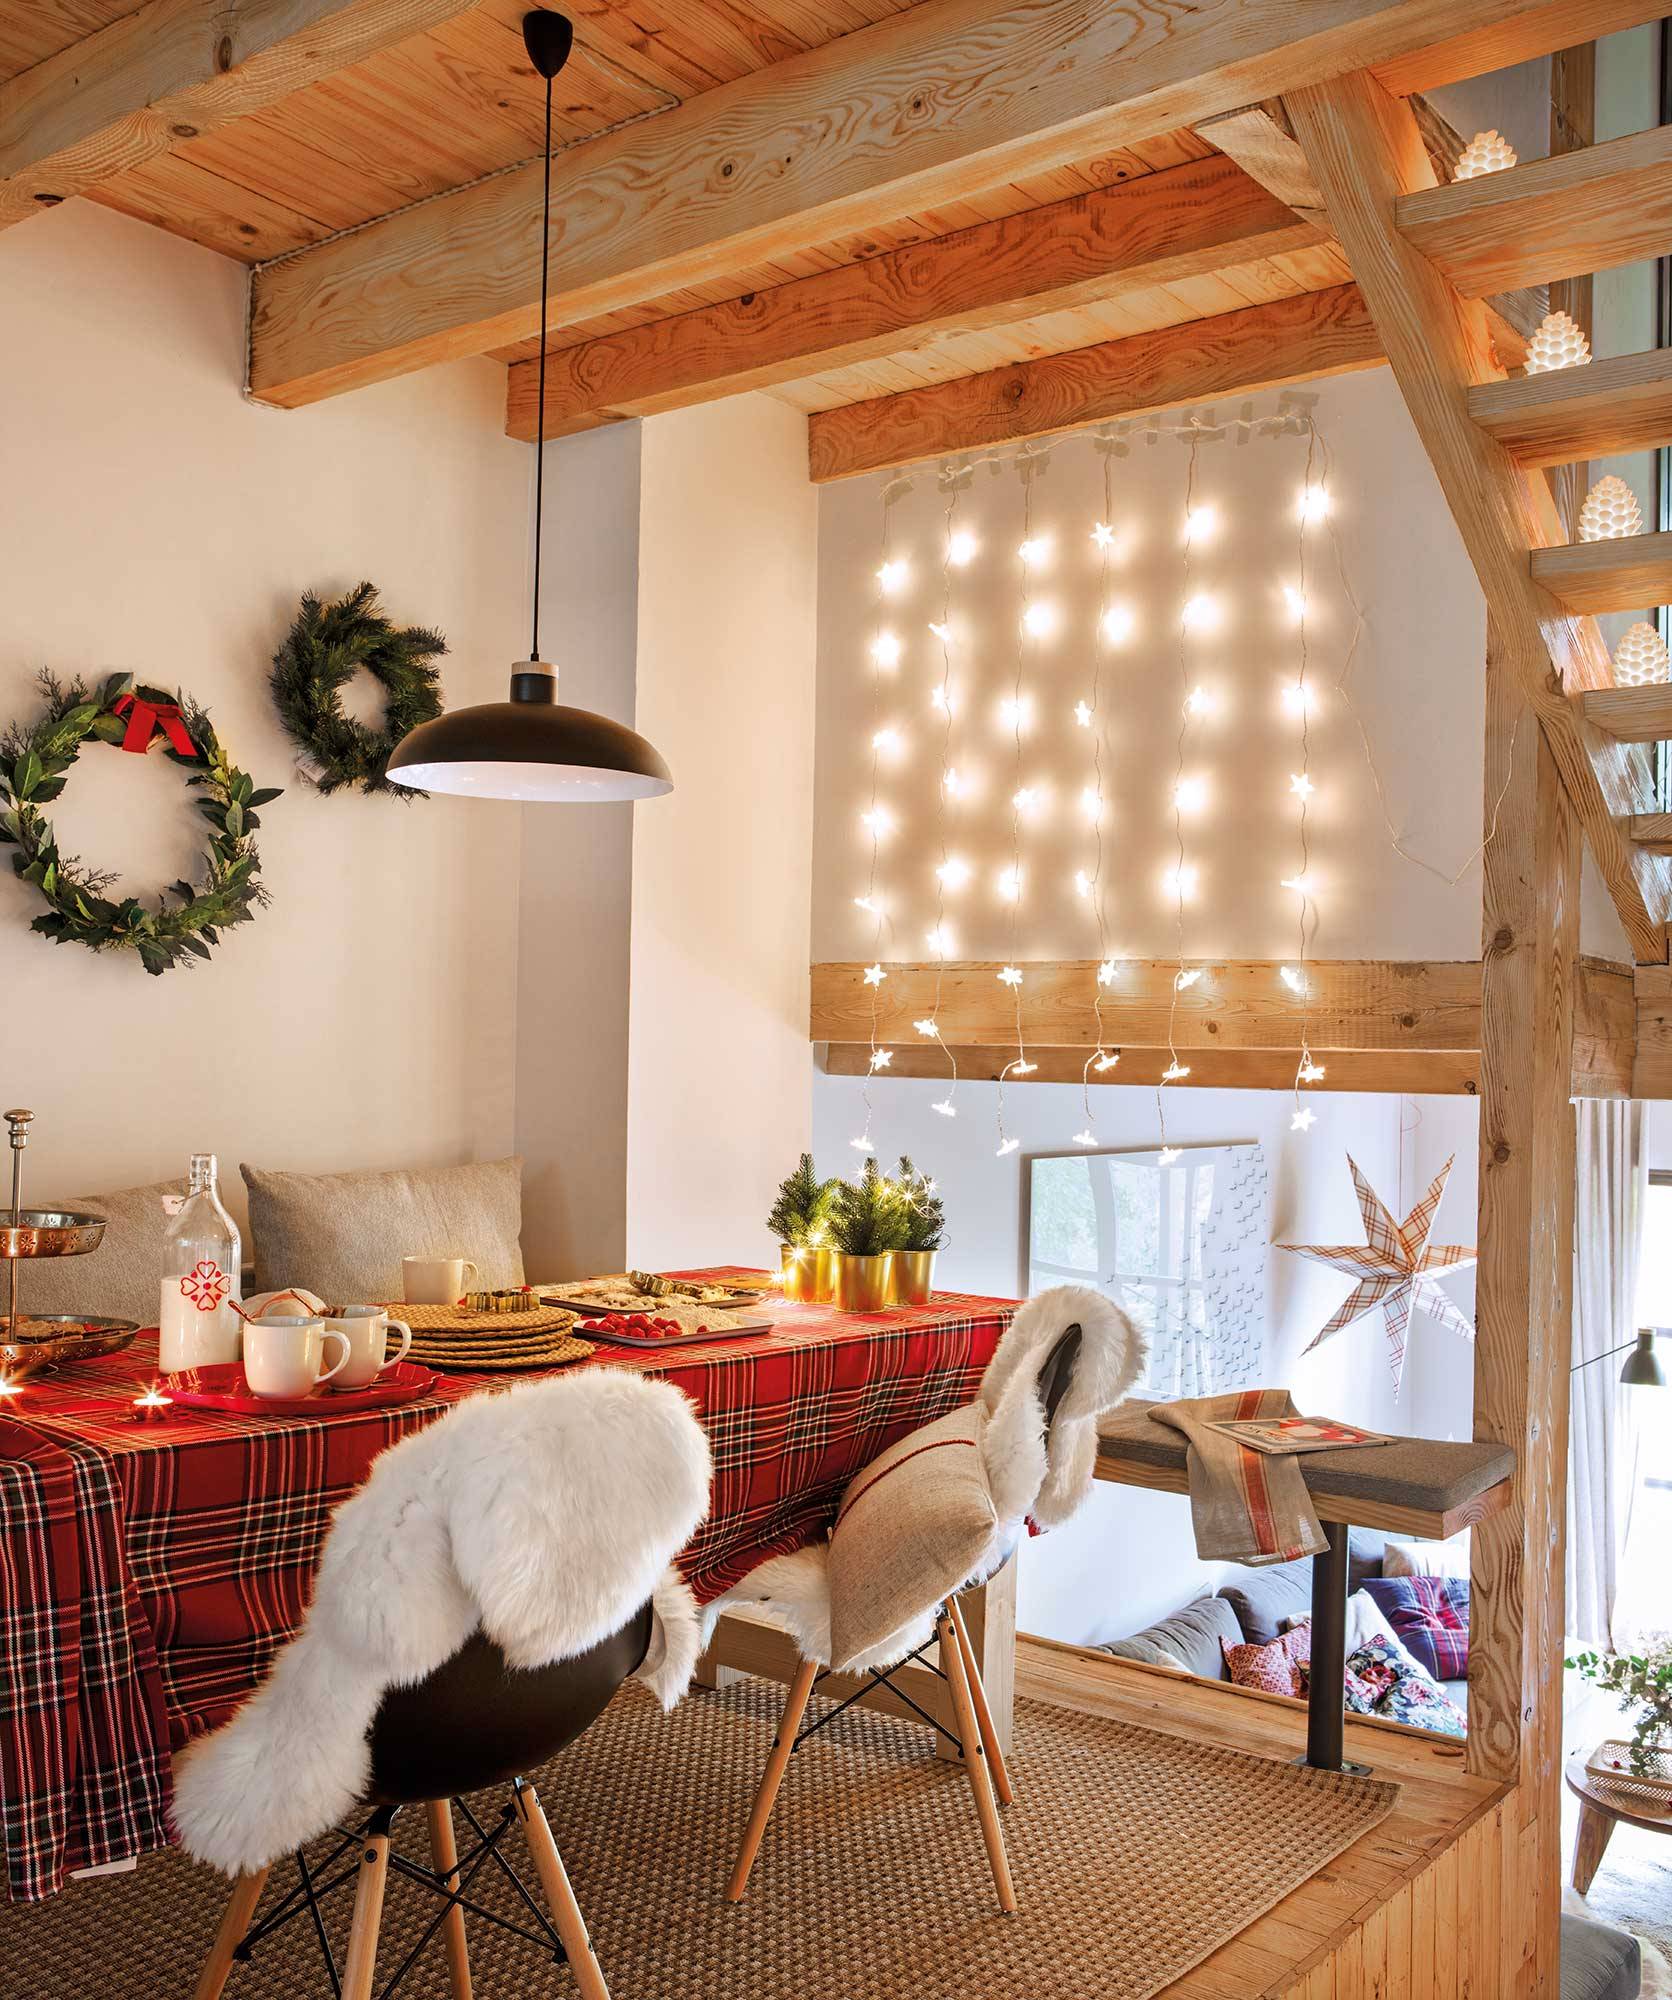 Comedor mini de casa de montaña decorado de Navidad_00495615